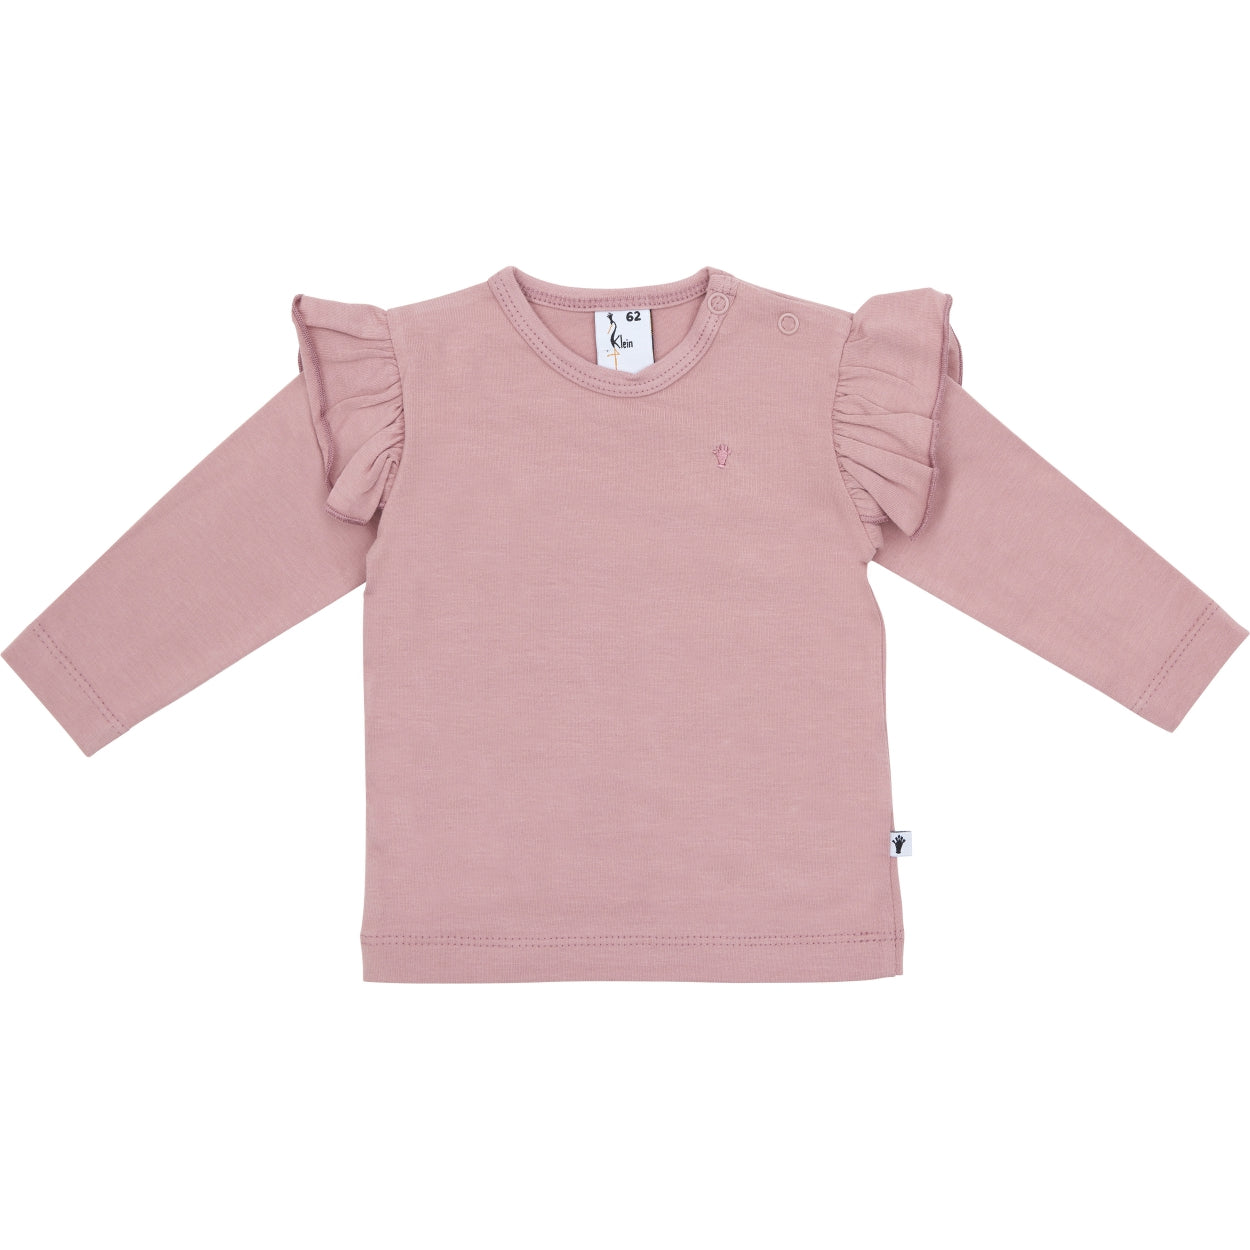 Meisjes Shirt Ruffle van Klein Baby in de kleur Dusty Rose in maat 74.